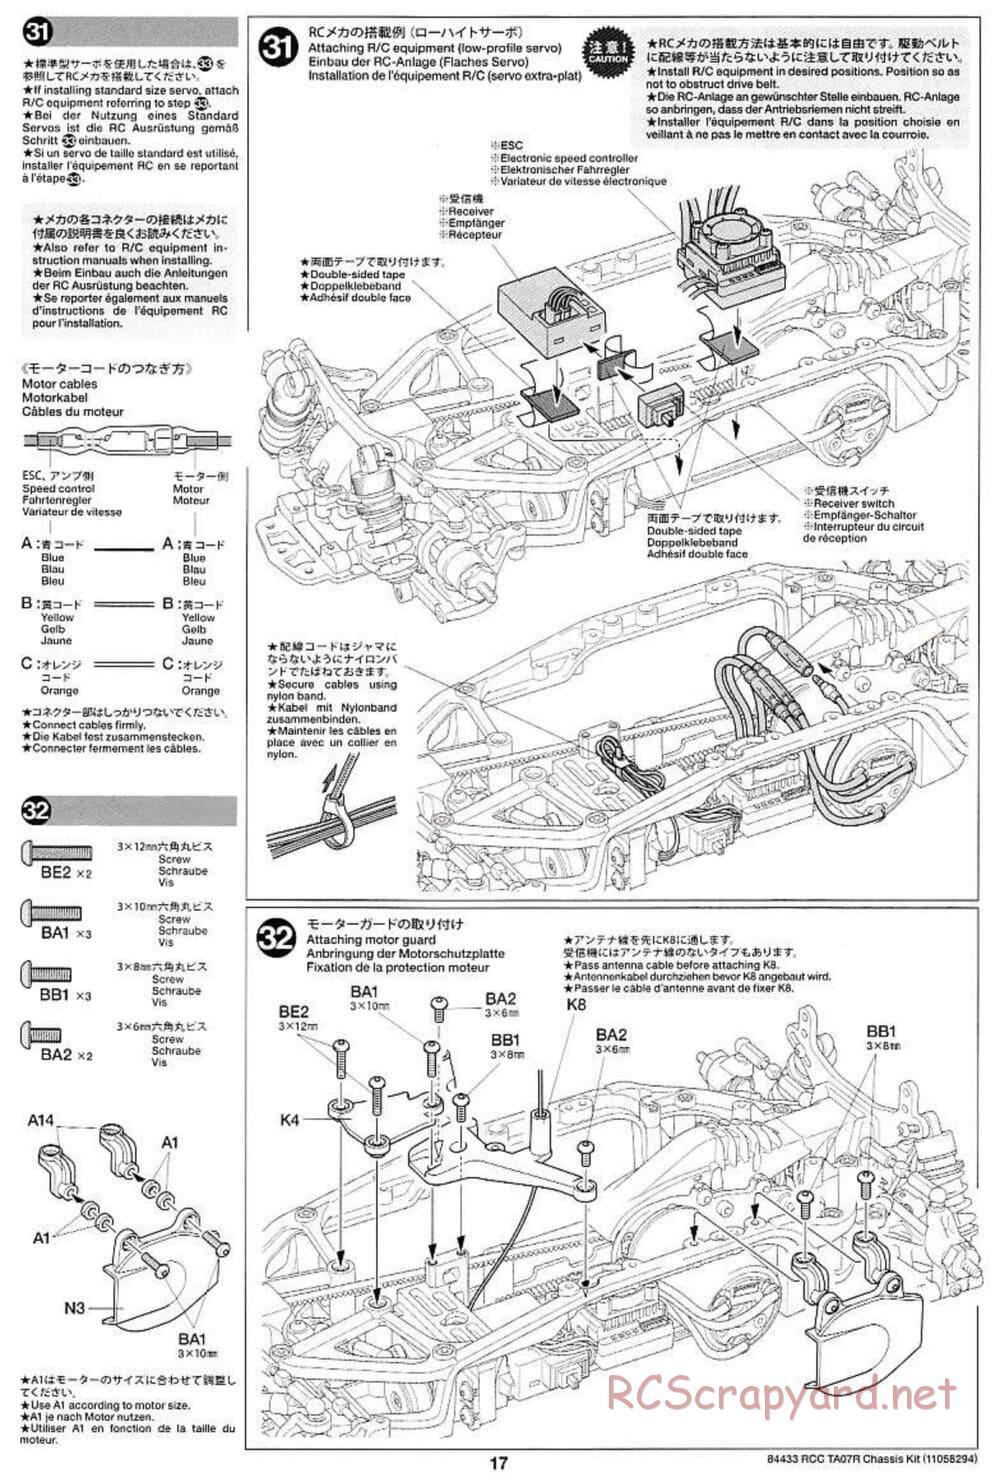 Tamiya - TA07 R Chassis - Manual - Page 17